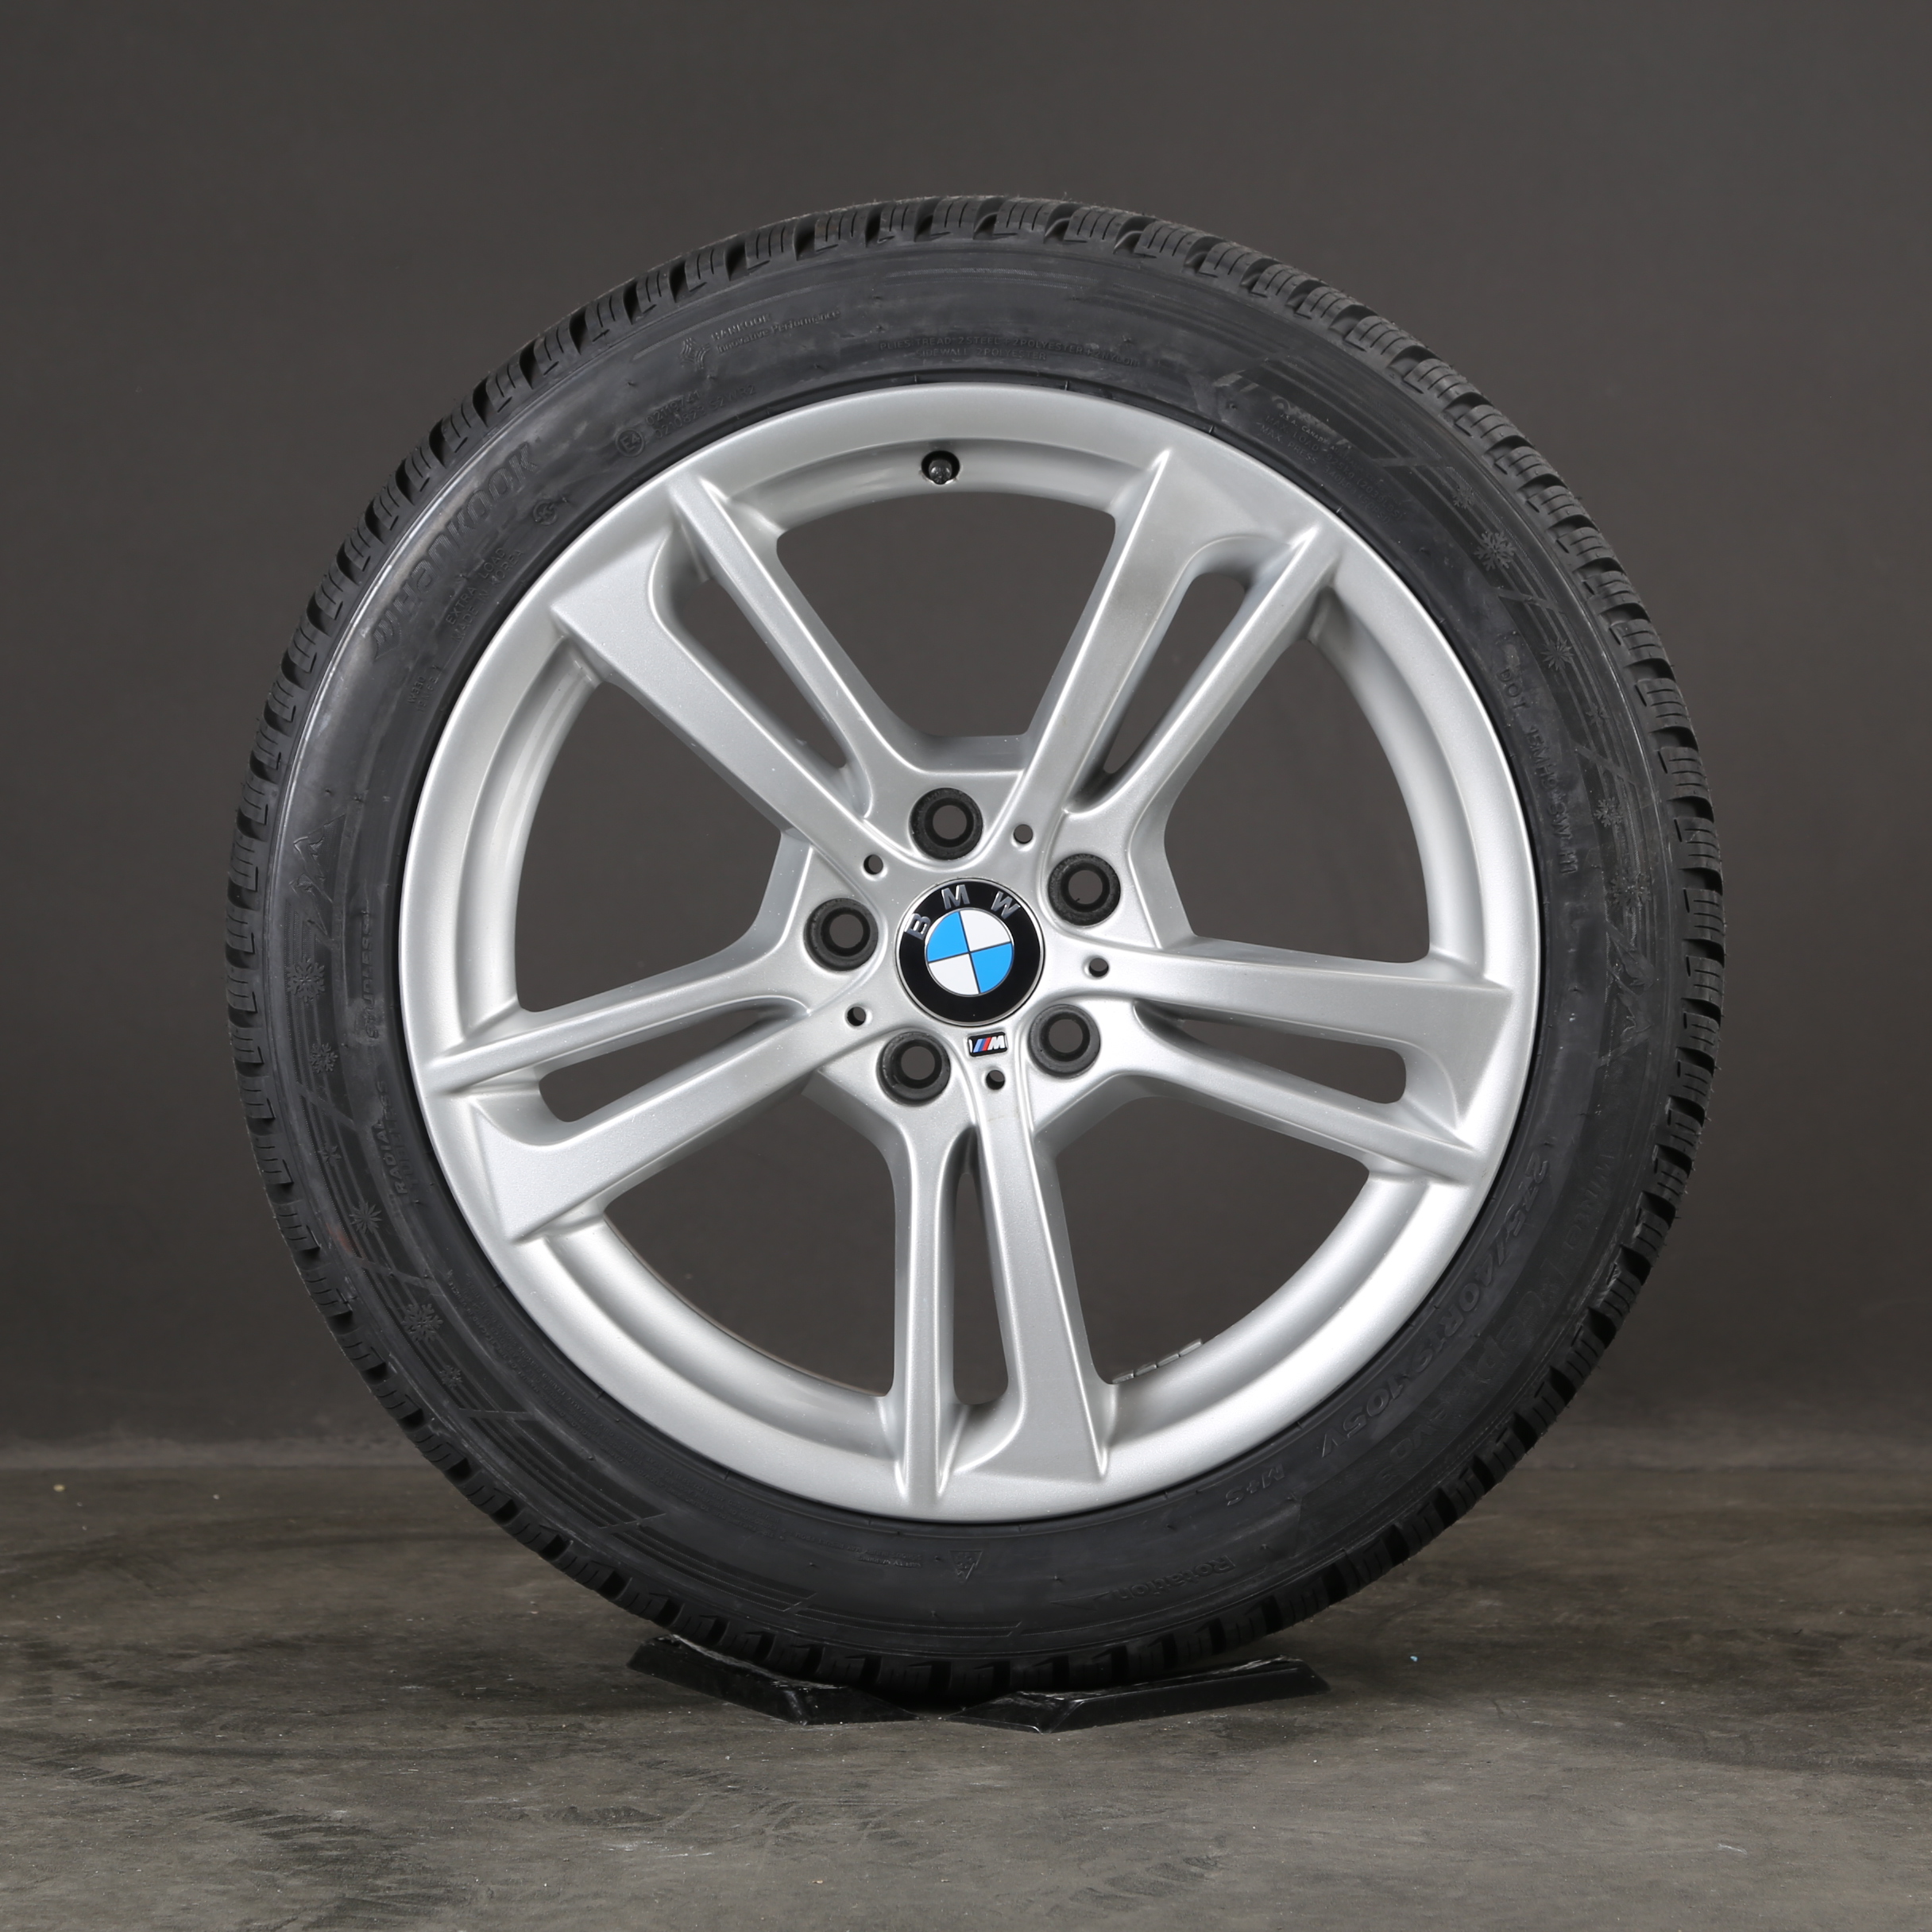 19 pouces roues d'hiver d'origine BMW X4 F26 X3 F25 M369 jantes pneus d'hiver